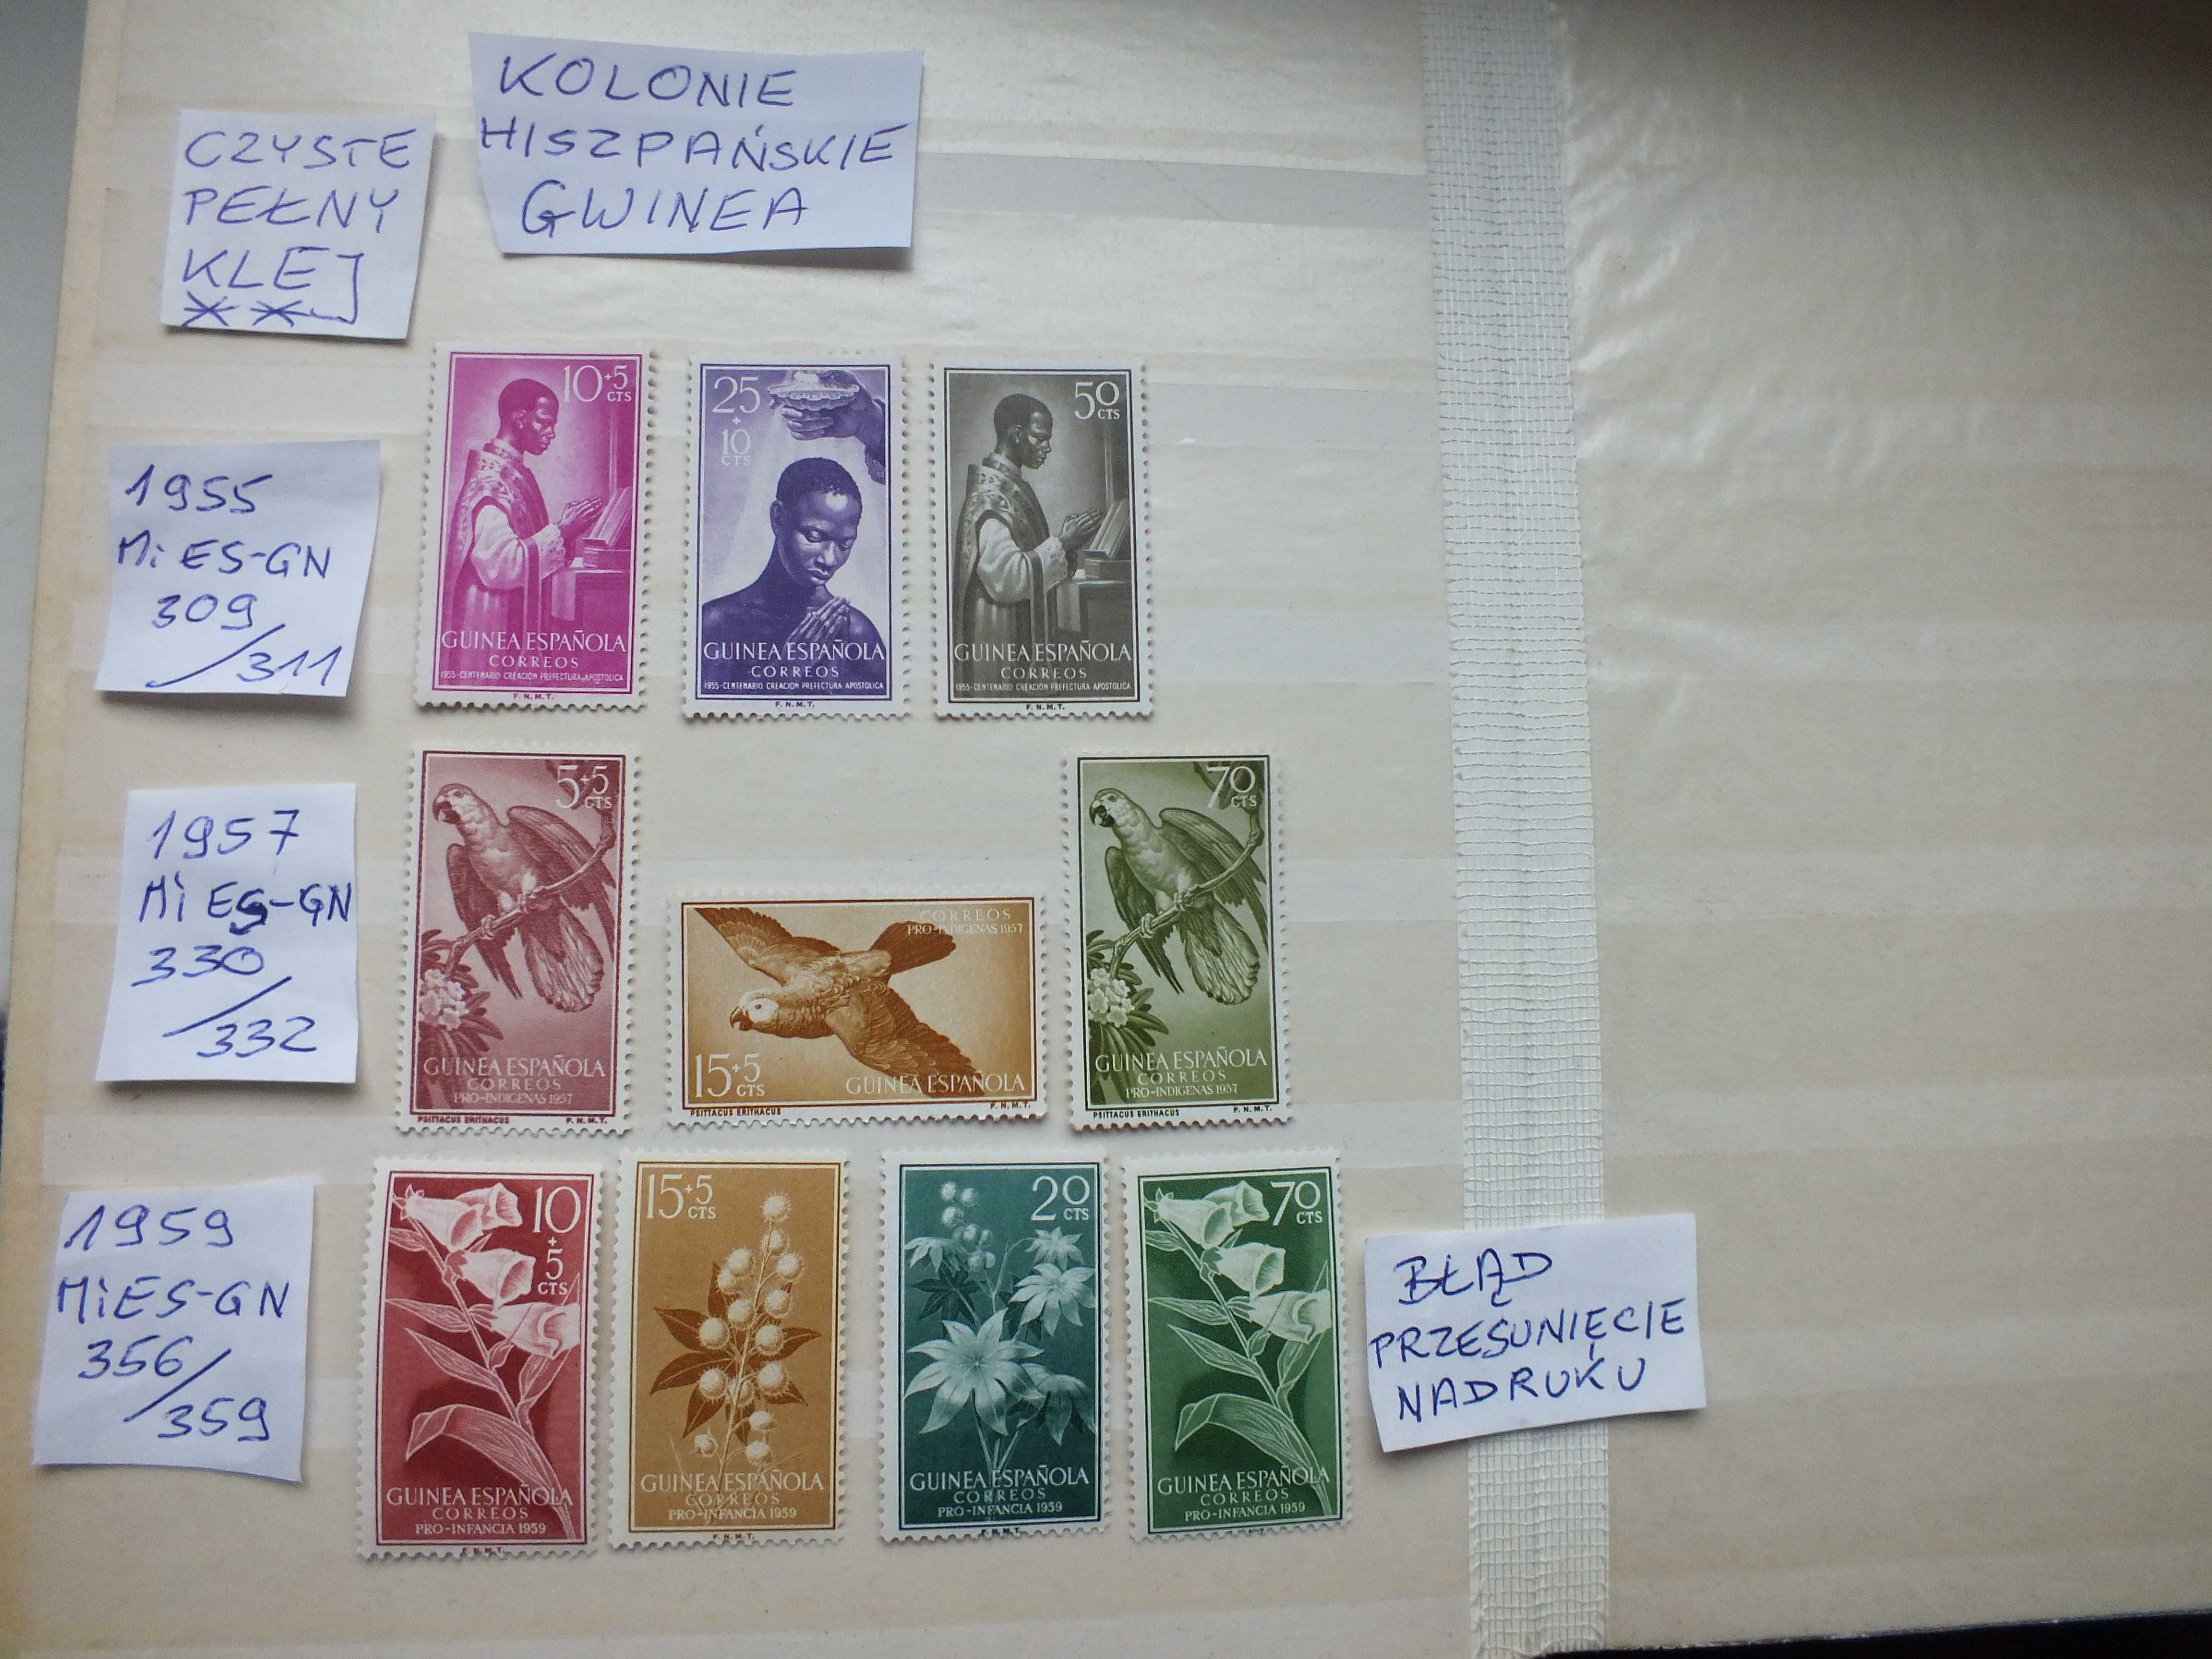 10szt. znaczki serie BŁĄD 1957/1958 Kolonie Hiszpania GWINEA czyste **